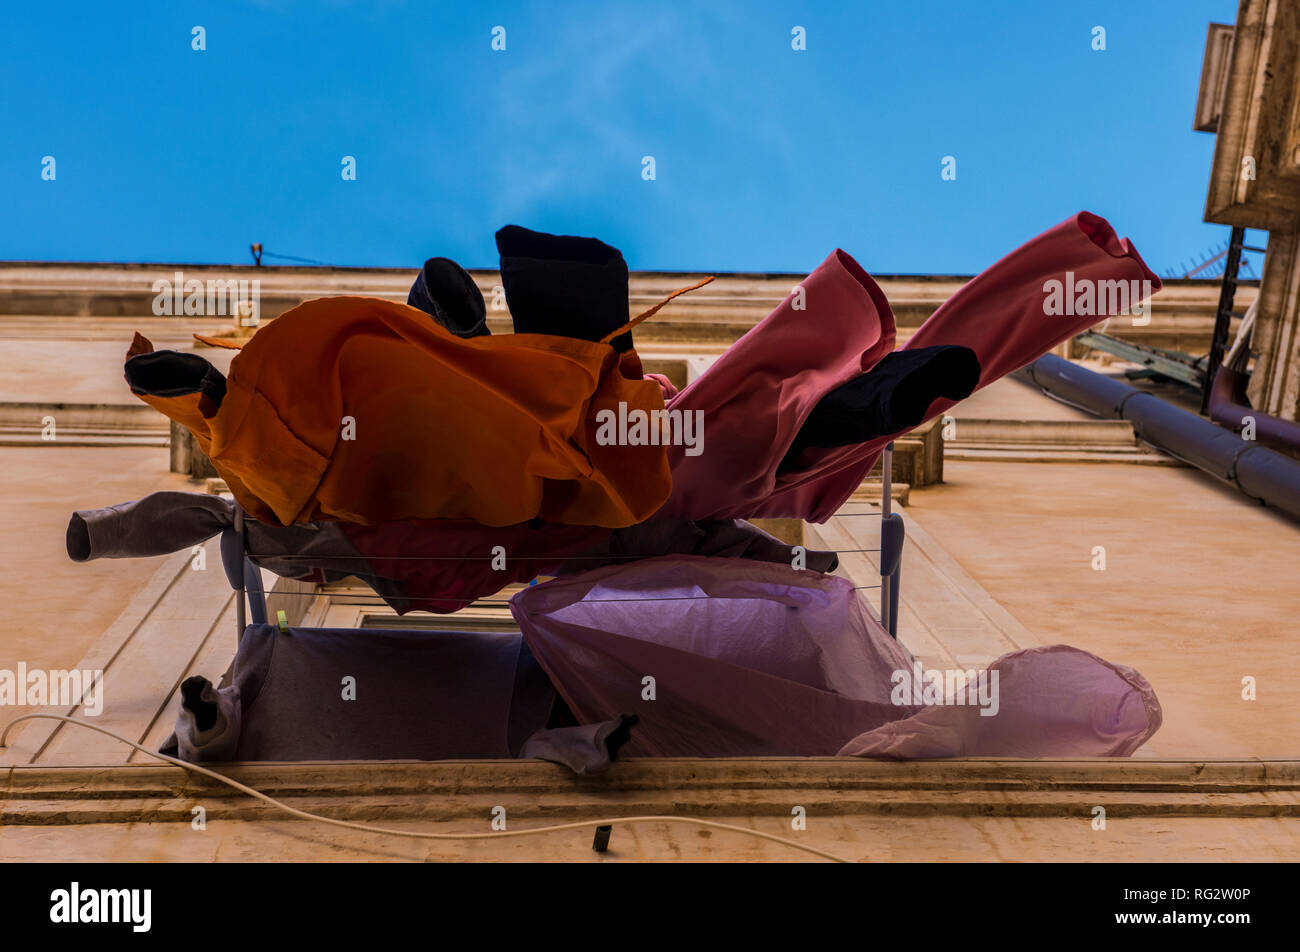 Waschen, in den Wind, hängen von außen Fenster étendoir, Low Angle View, der Insel Ortygia, Syrakus, Sizilien, Italien, Europa Stockfoto